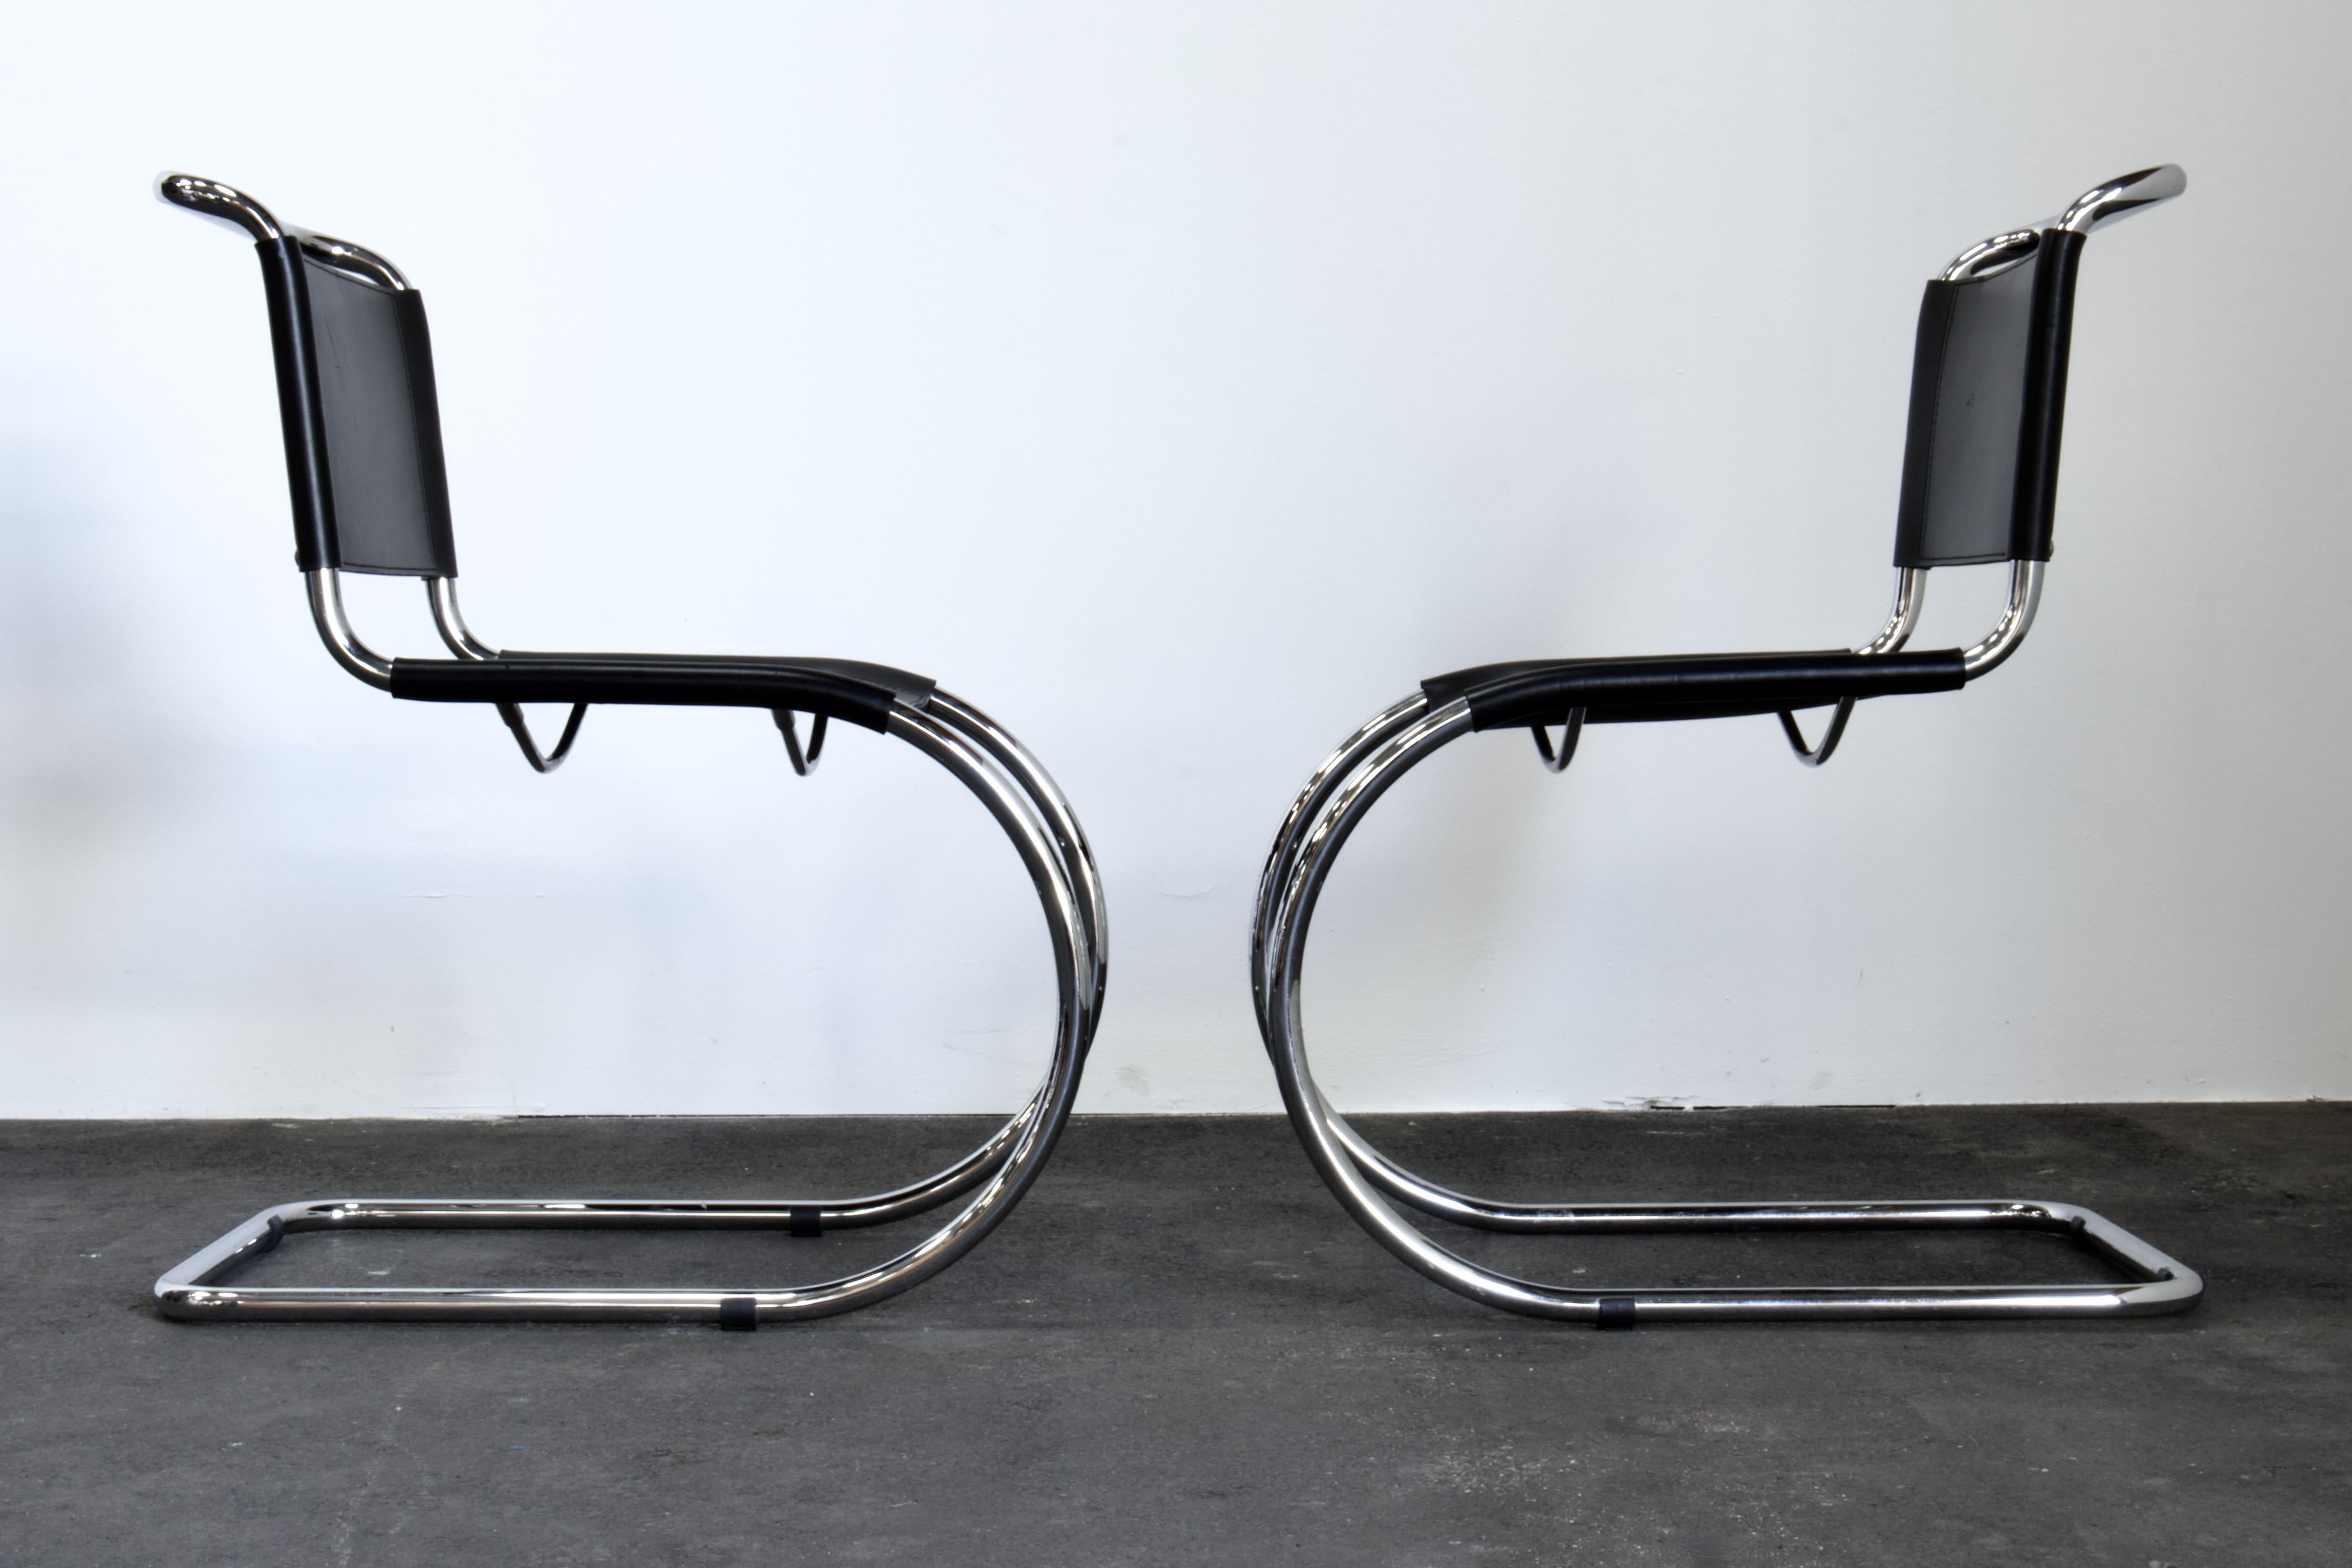 Ensemble de 8 chaises luge MR 10 (256cs) de Ludwig Mies van der Rohe. Cet ensemble est fabriqué en cuir de selle noir de haute qualité à tannage végétal par Gavina en Italie vers les années 1980. Une icône absolue du mouvement Bauhaus et une